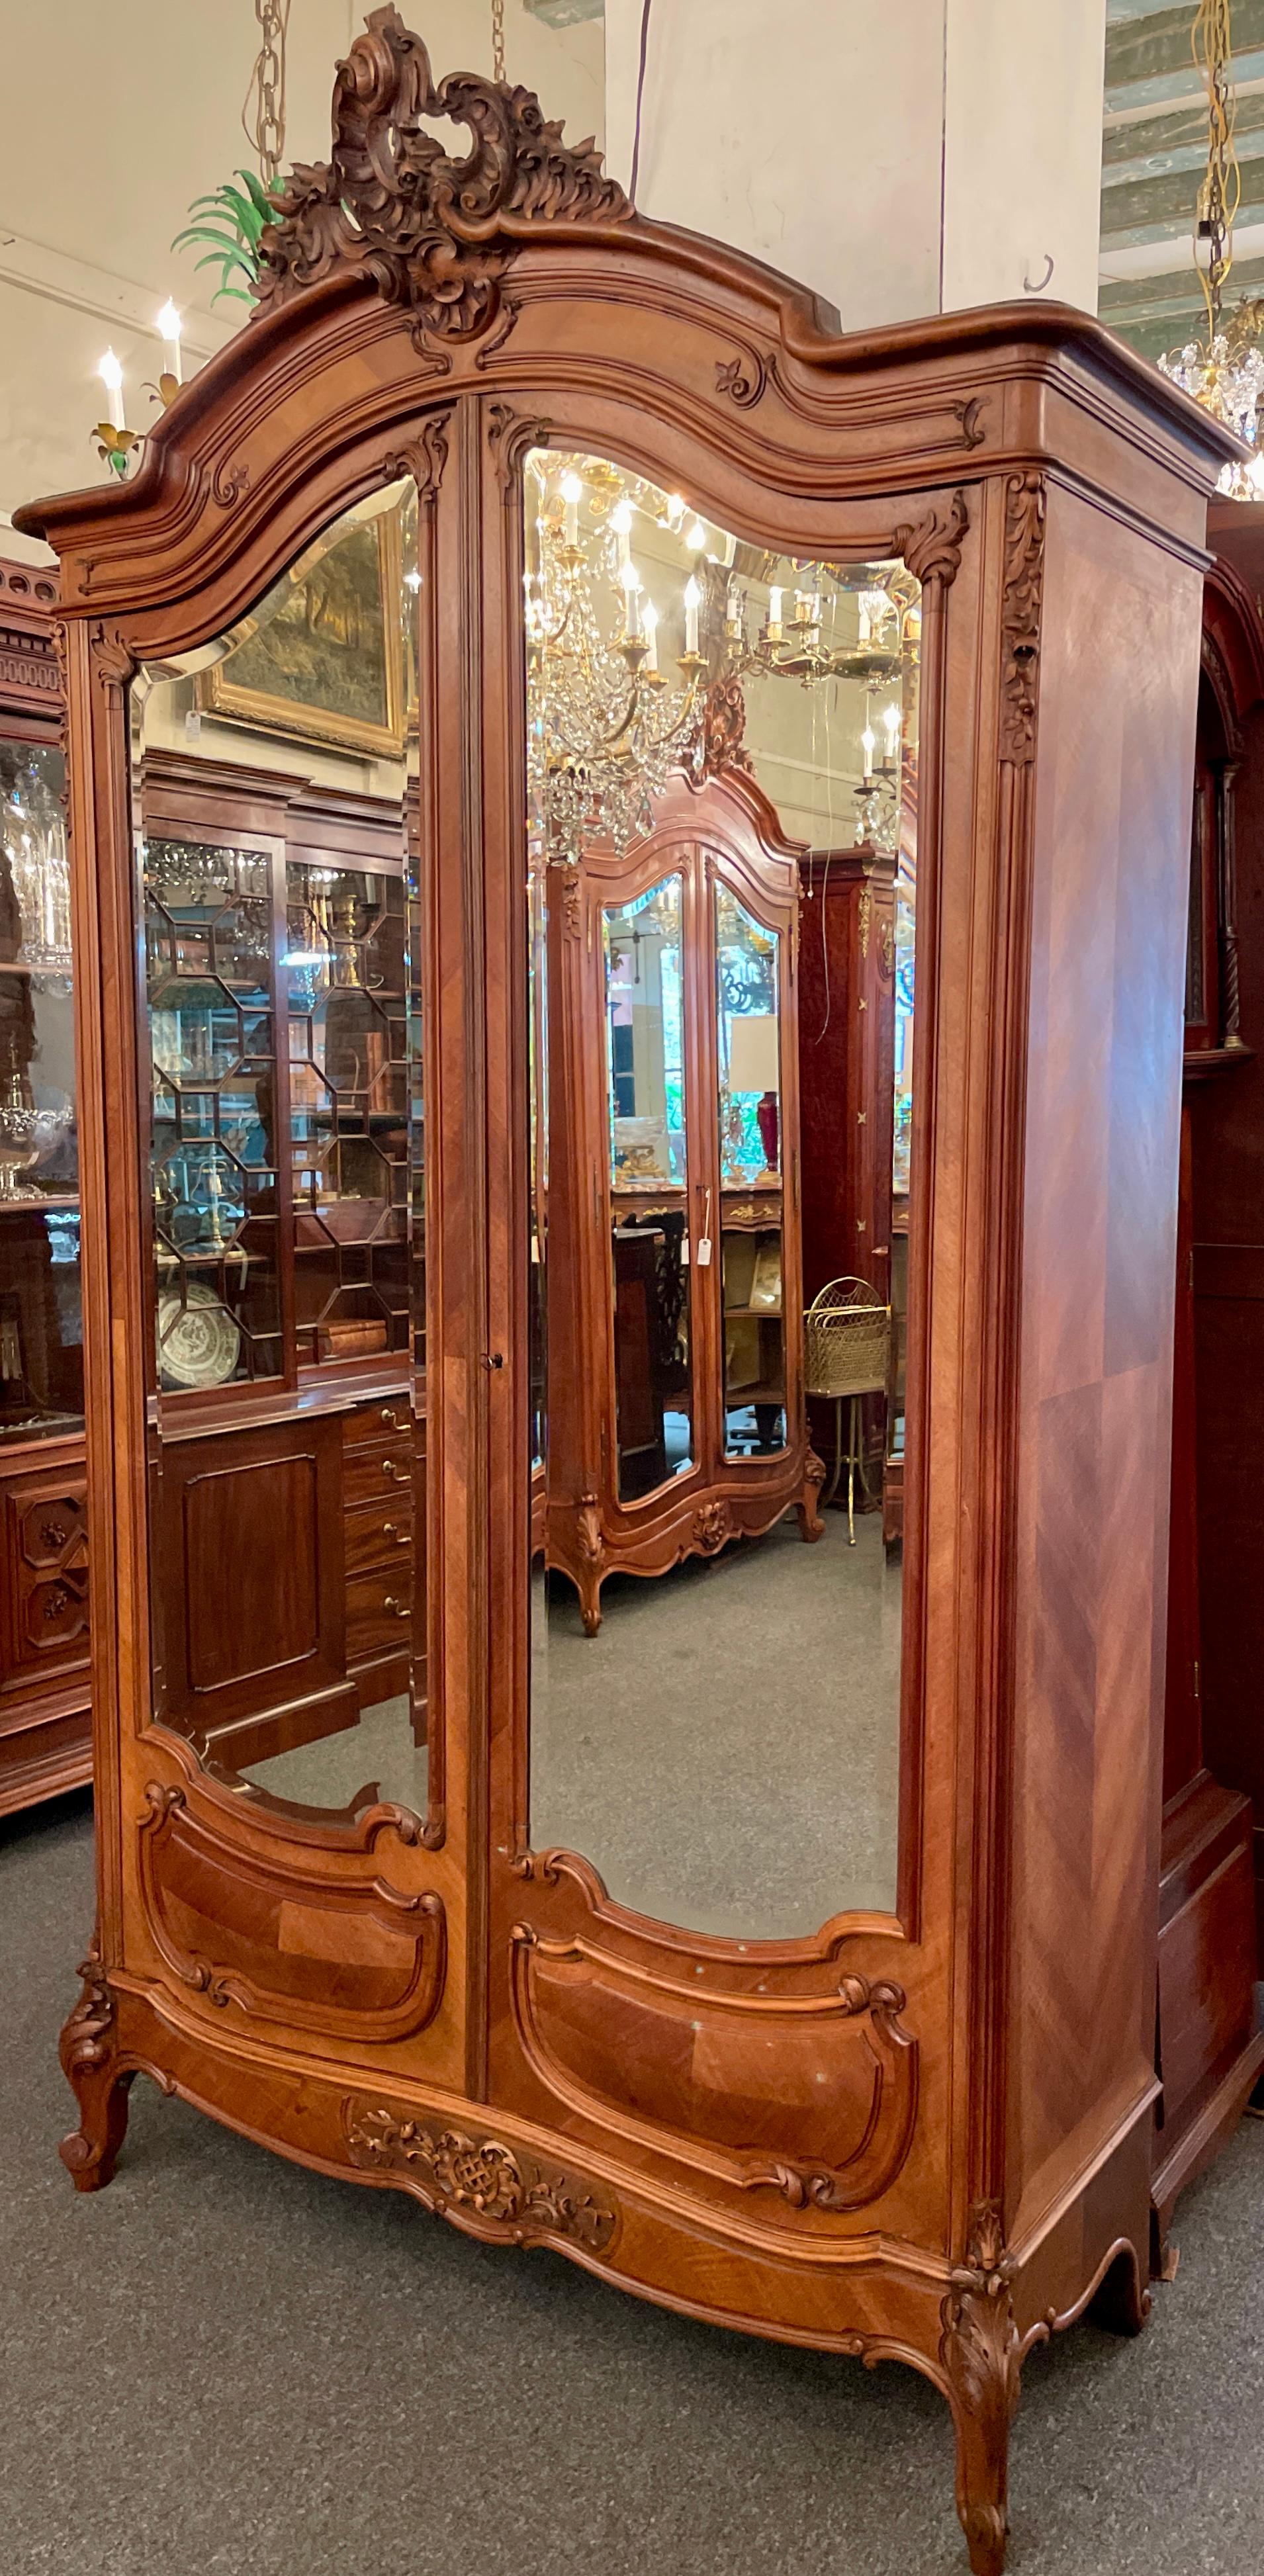 Ancienne armoire française de style Louis XV en noyer sculpté à 2 portes avec miroirs biseautés originaux. Bel intérieur aménagé.